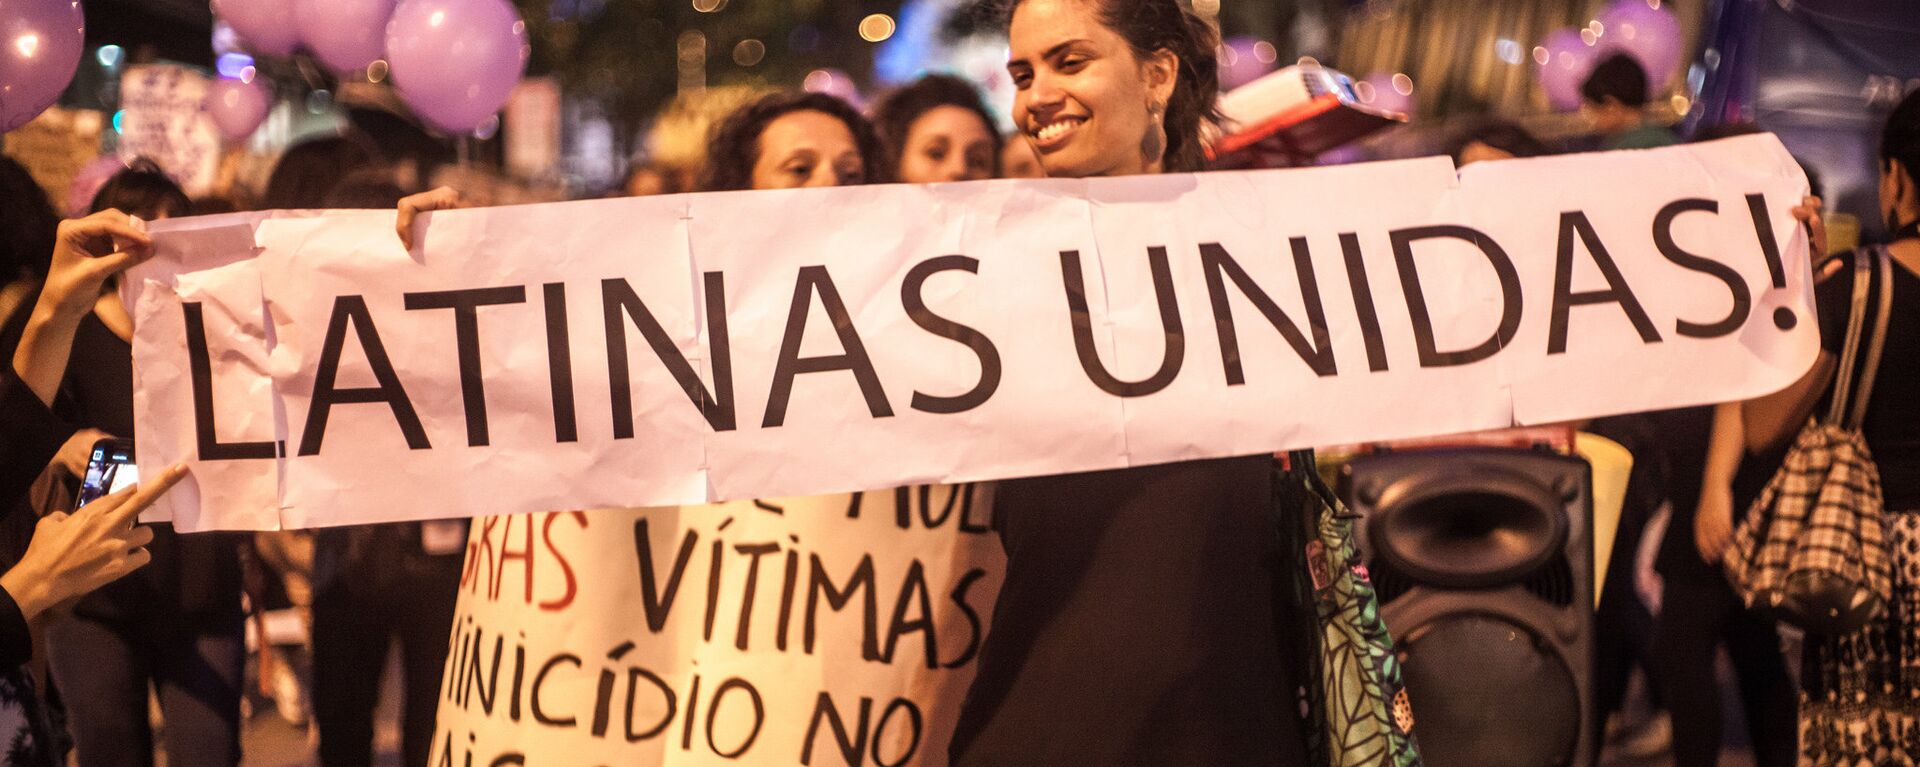 Manifestación del movimiento Ni Una Menos en Río de Janeiro, Brasil - Sputnik Mundo, 1920, 07.03.2018